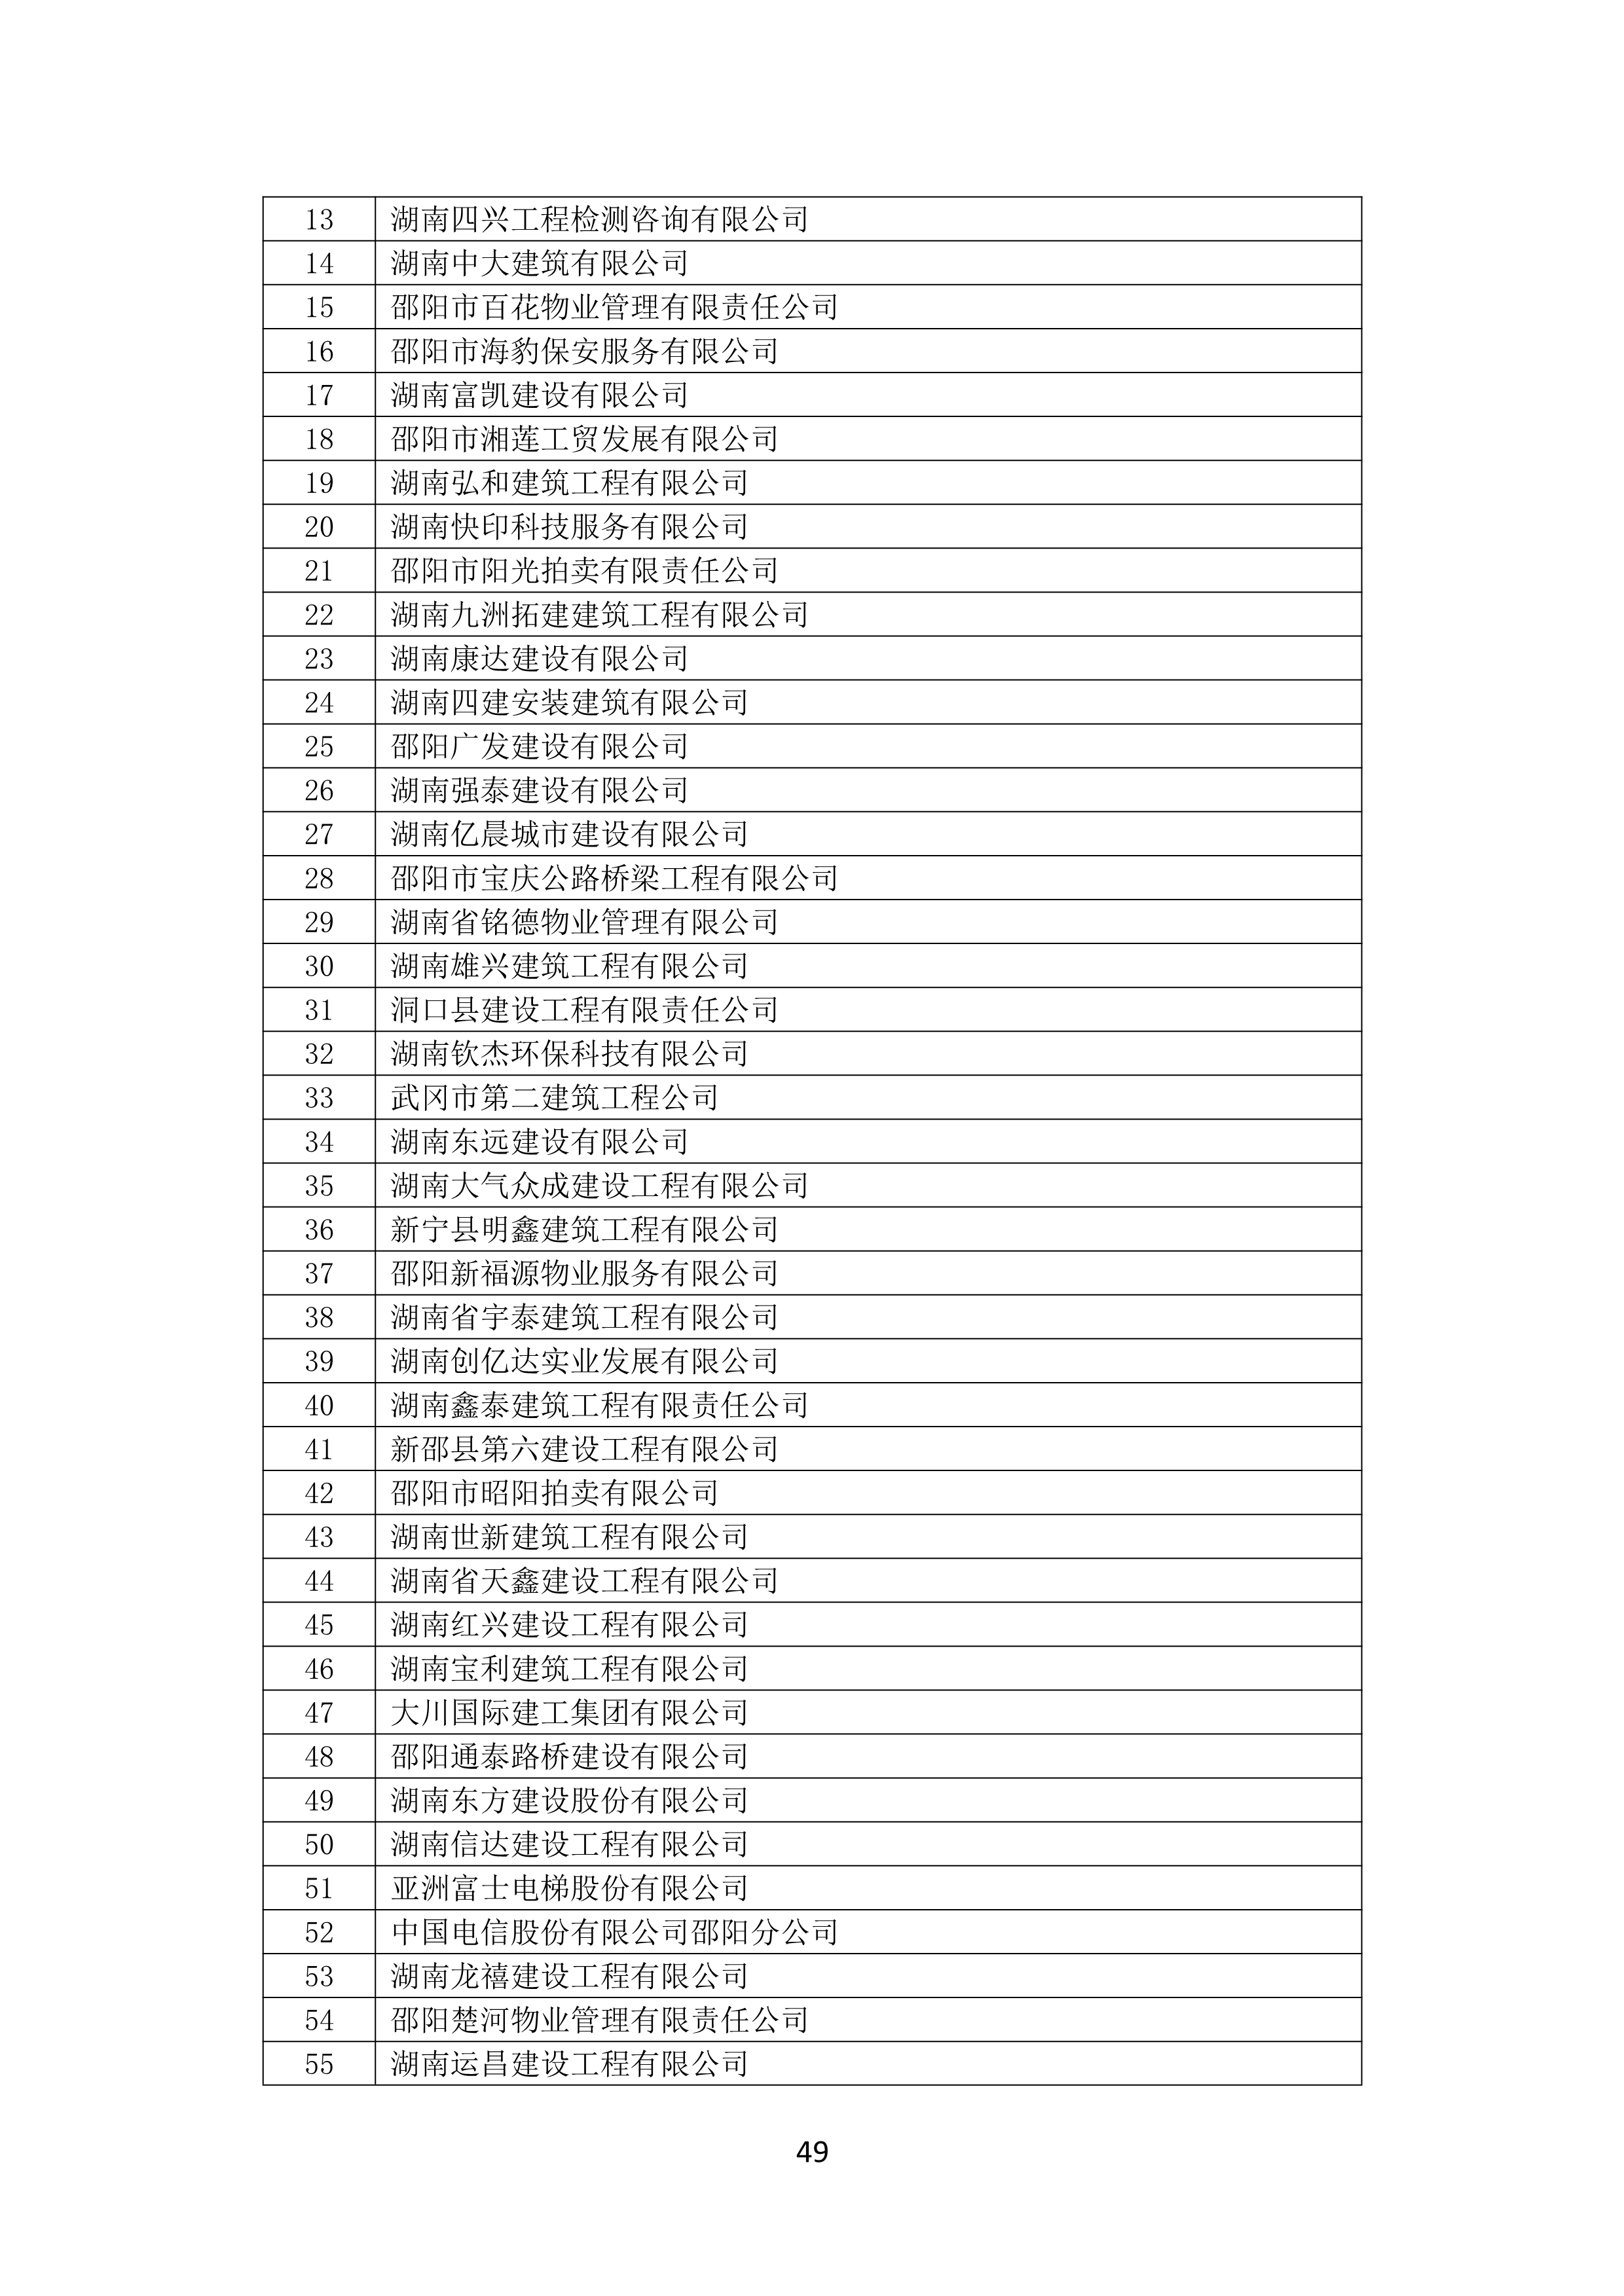 2021 年(nián)度湖南省守合同重信用企業名單_50.png